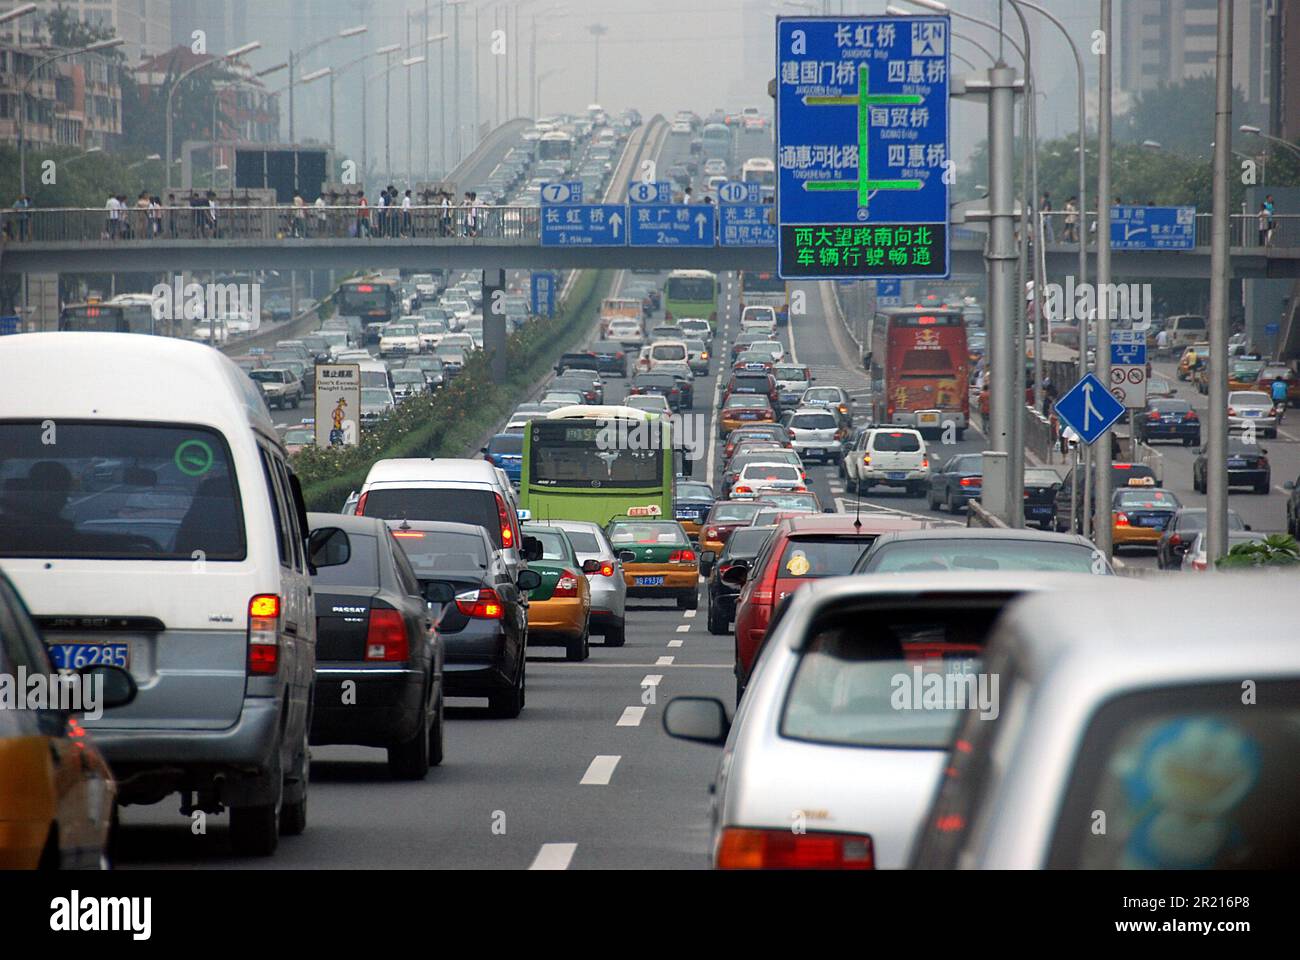 Peking, China - Verkehr auf den Straßen von Peking. Autofahrer fahren in dem schweren Smog, der die Sicht einschränkte, da starker Smog über Peking hängt, während die Verschmutzung bei hohen Temperaturen und hoher Luftfeuchtigkeit zunimmt. Stockfoto